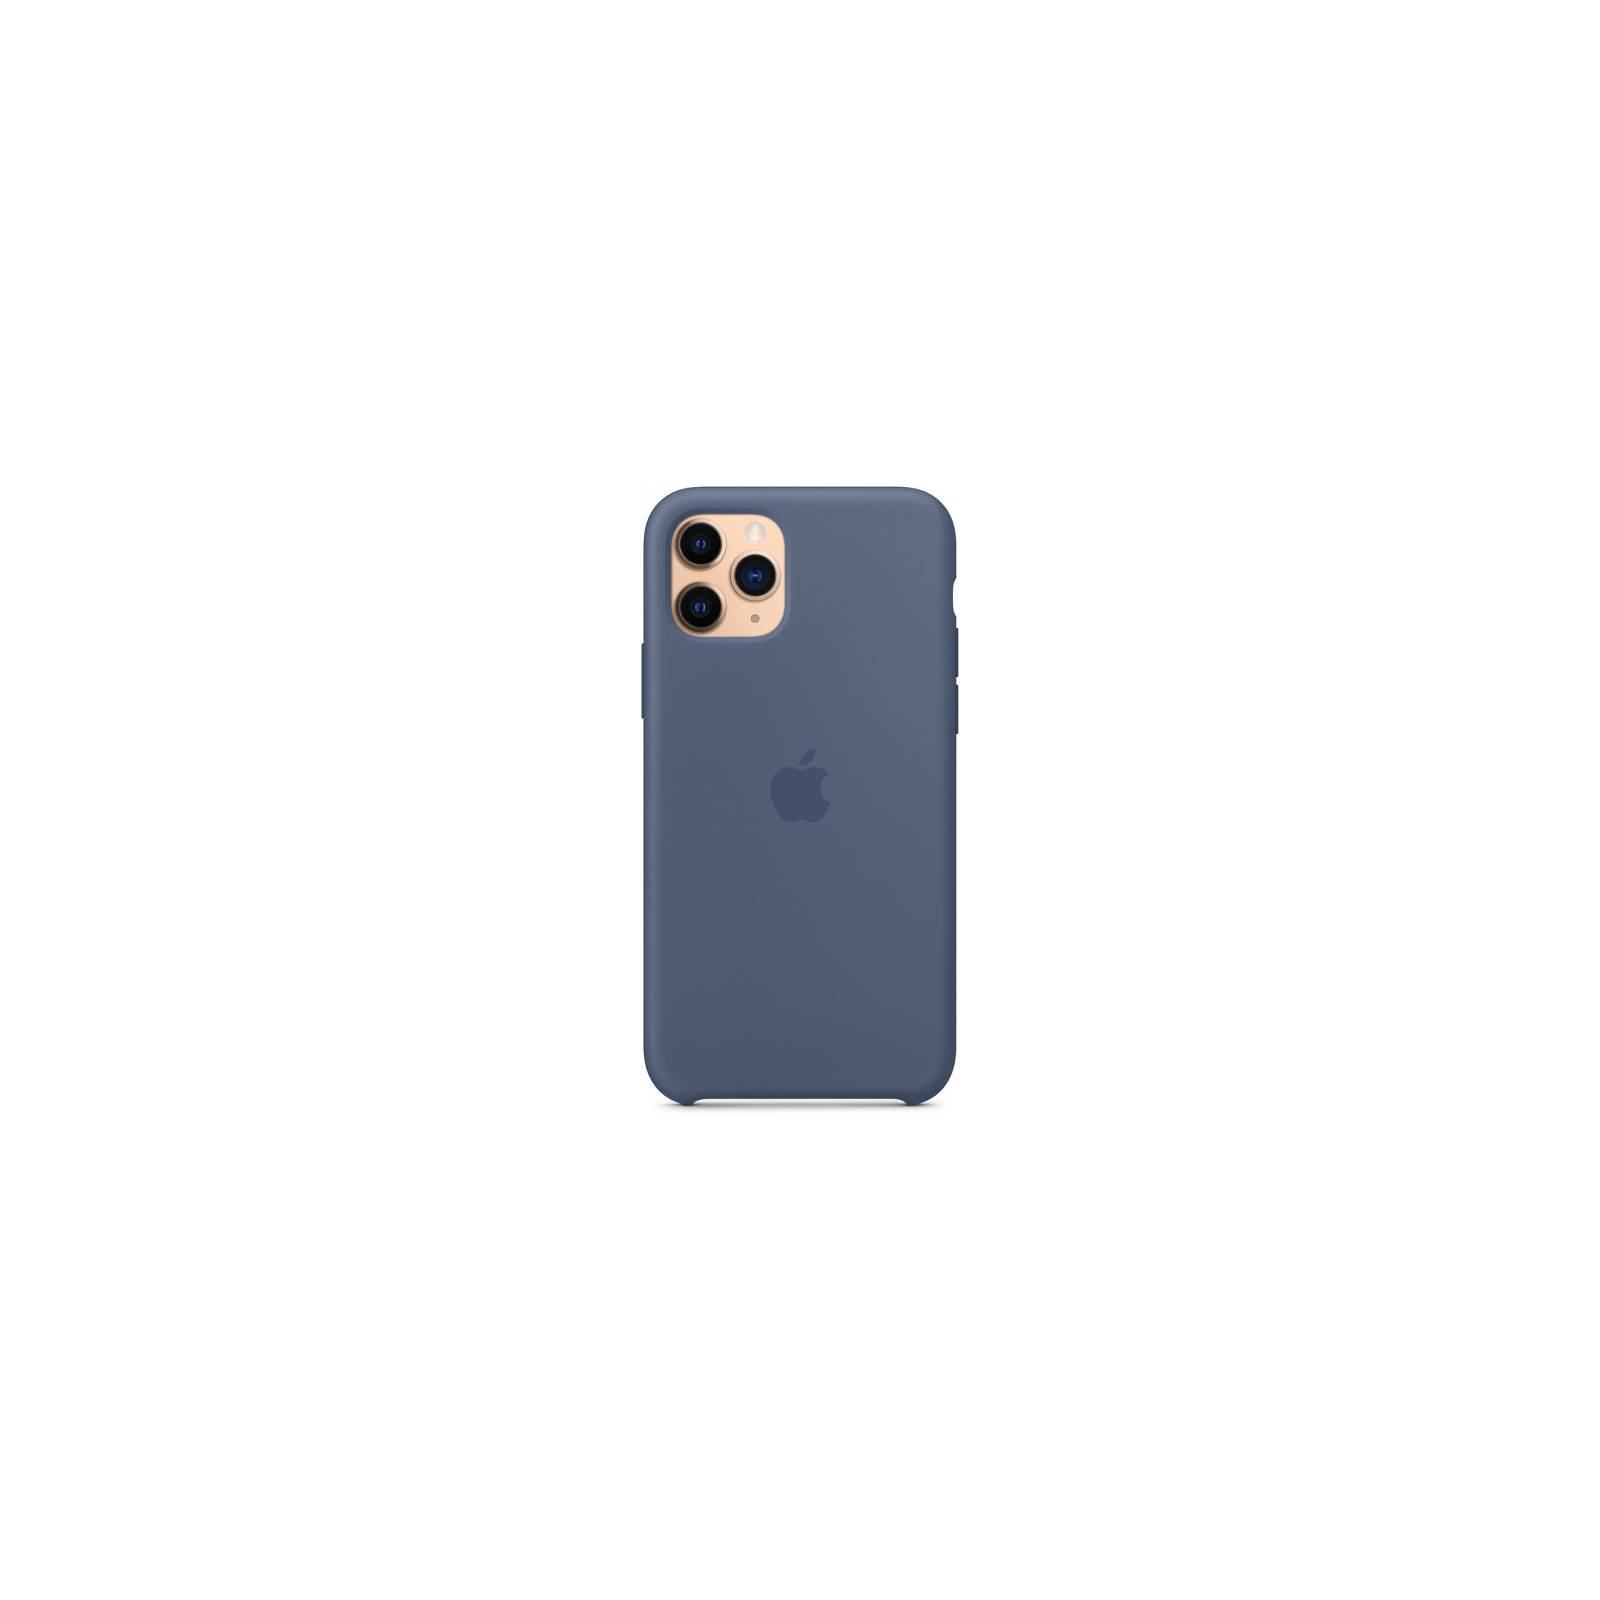 Чехол для мобильного телефона Apple iPhone 11 Pro Silicone Case - Alaskan Blue (MWYR2ZM/A) изображение 4